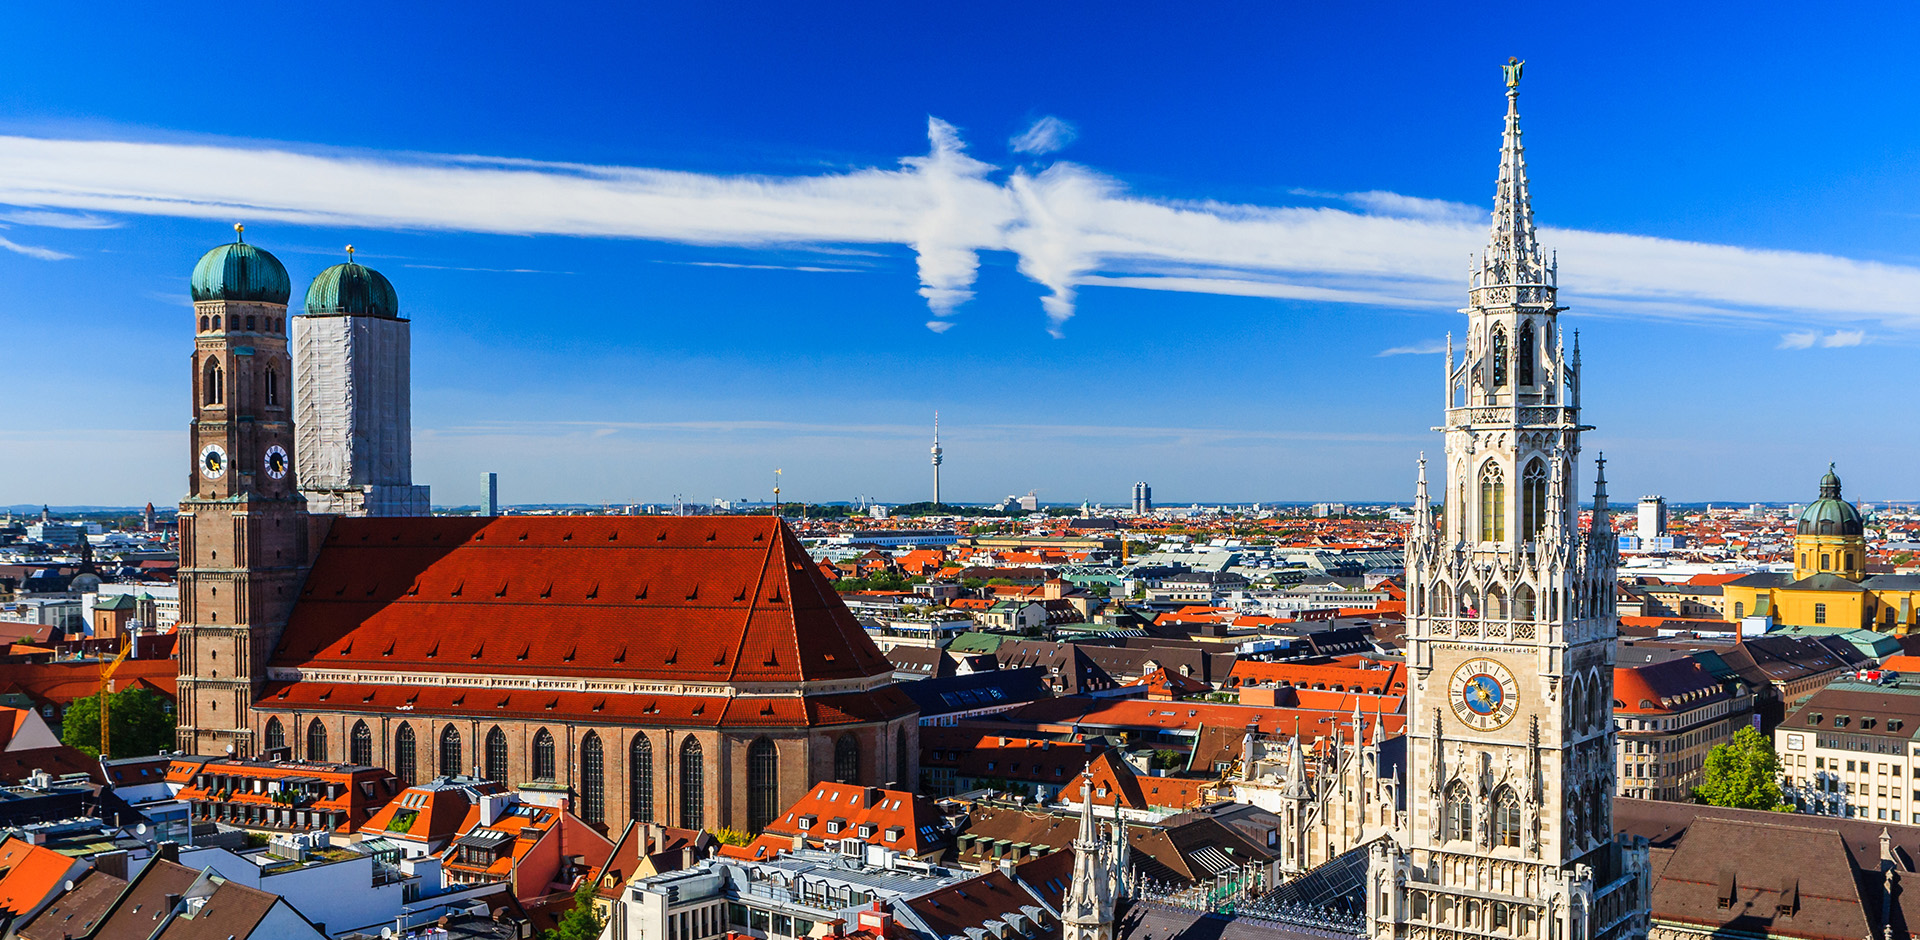 شهر مونیخ آلمان از مهم ترین مقاصد گردشگری اروپا | درباره مونیخ آلمان | مجله  خبری سفرمی